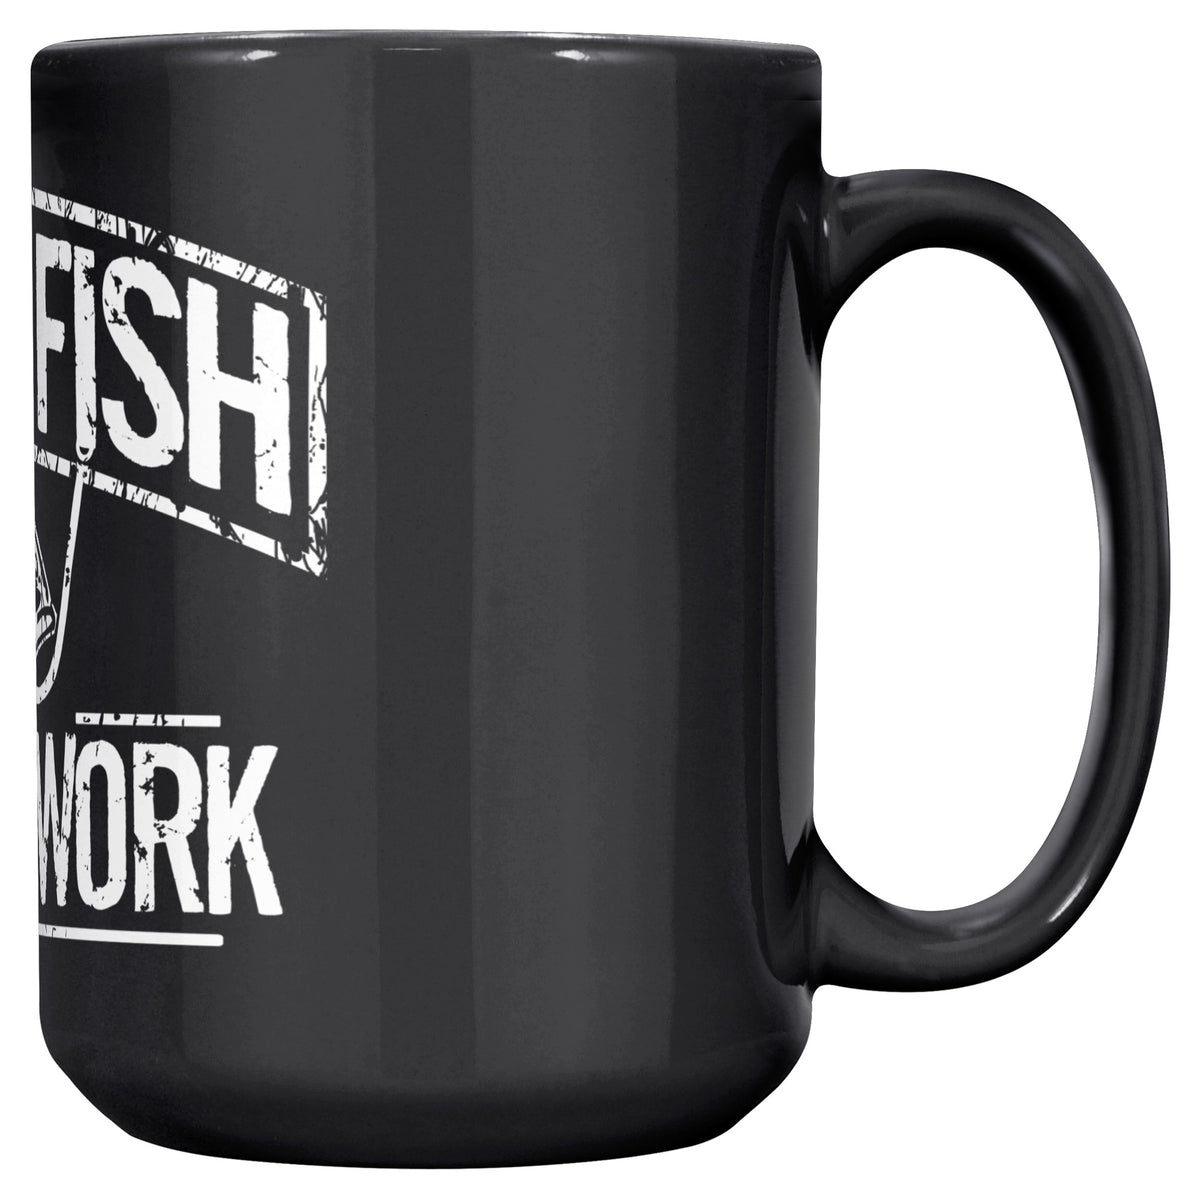 Born To Fish Premium 15 Oz Coffe Mug